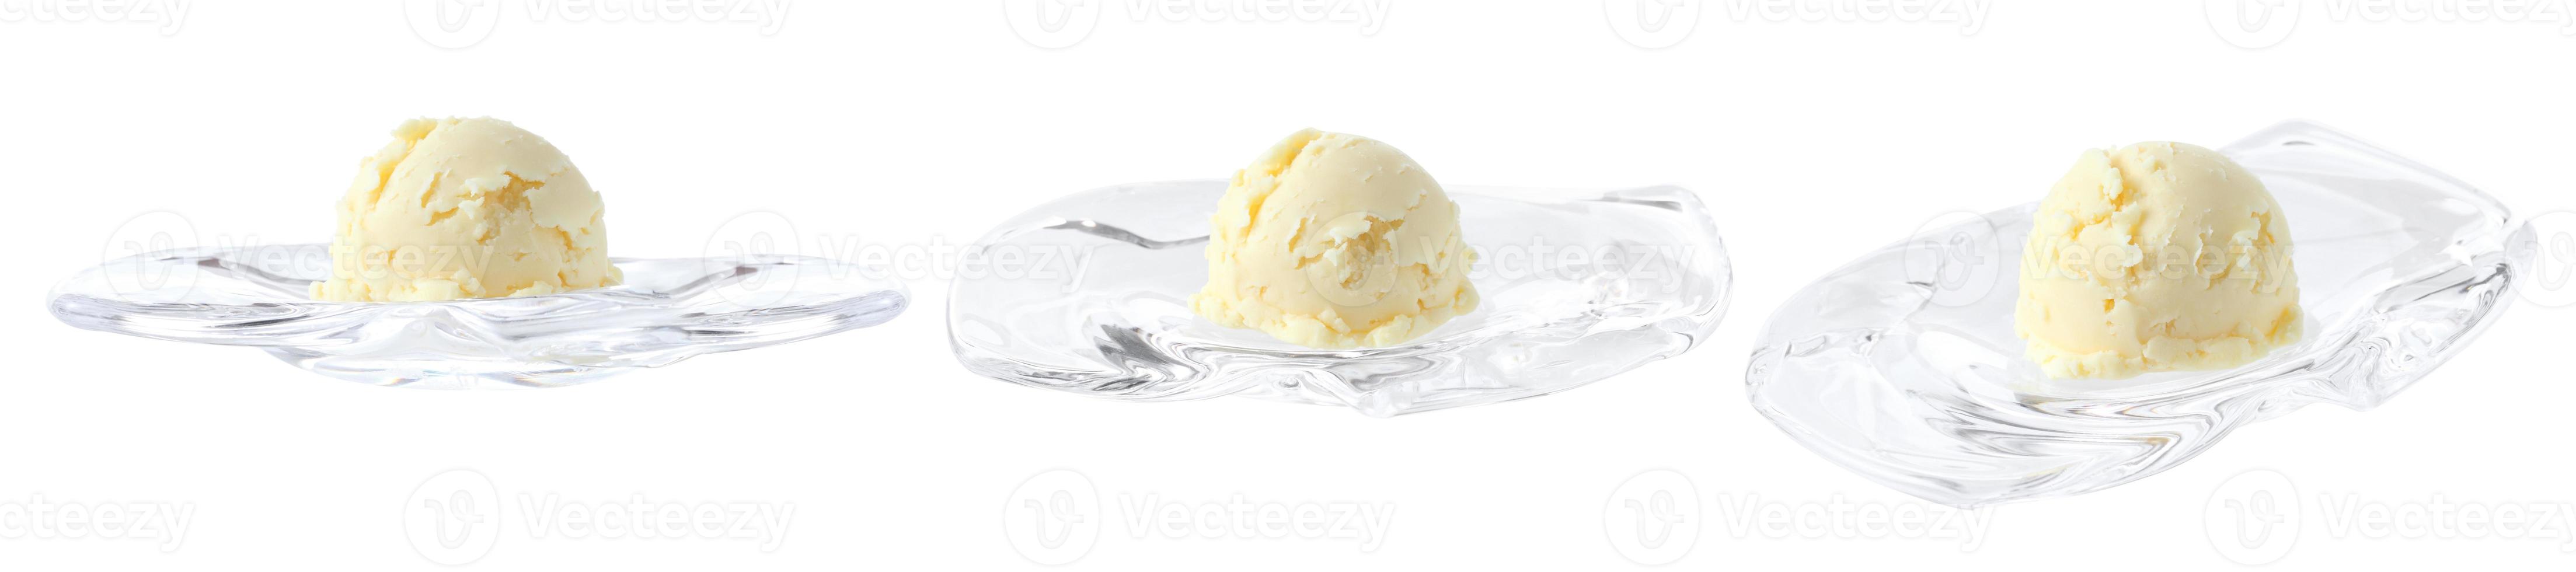 vanille-ijs in mini glazen dienblad op witte achtergrond foto